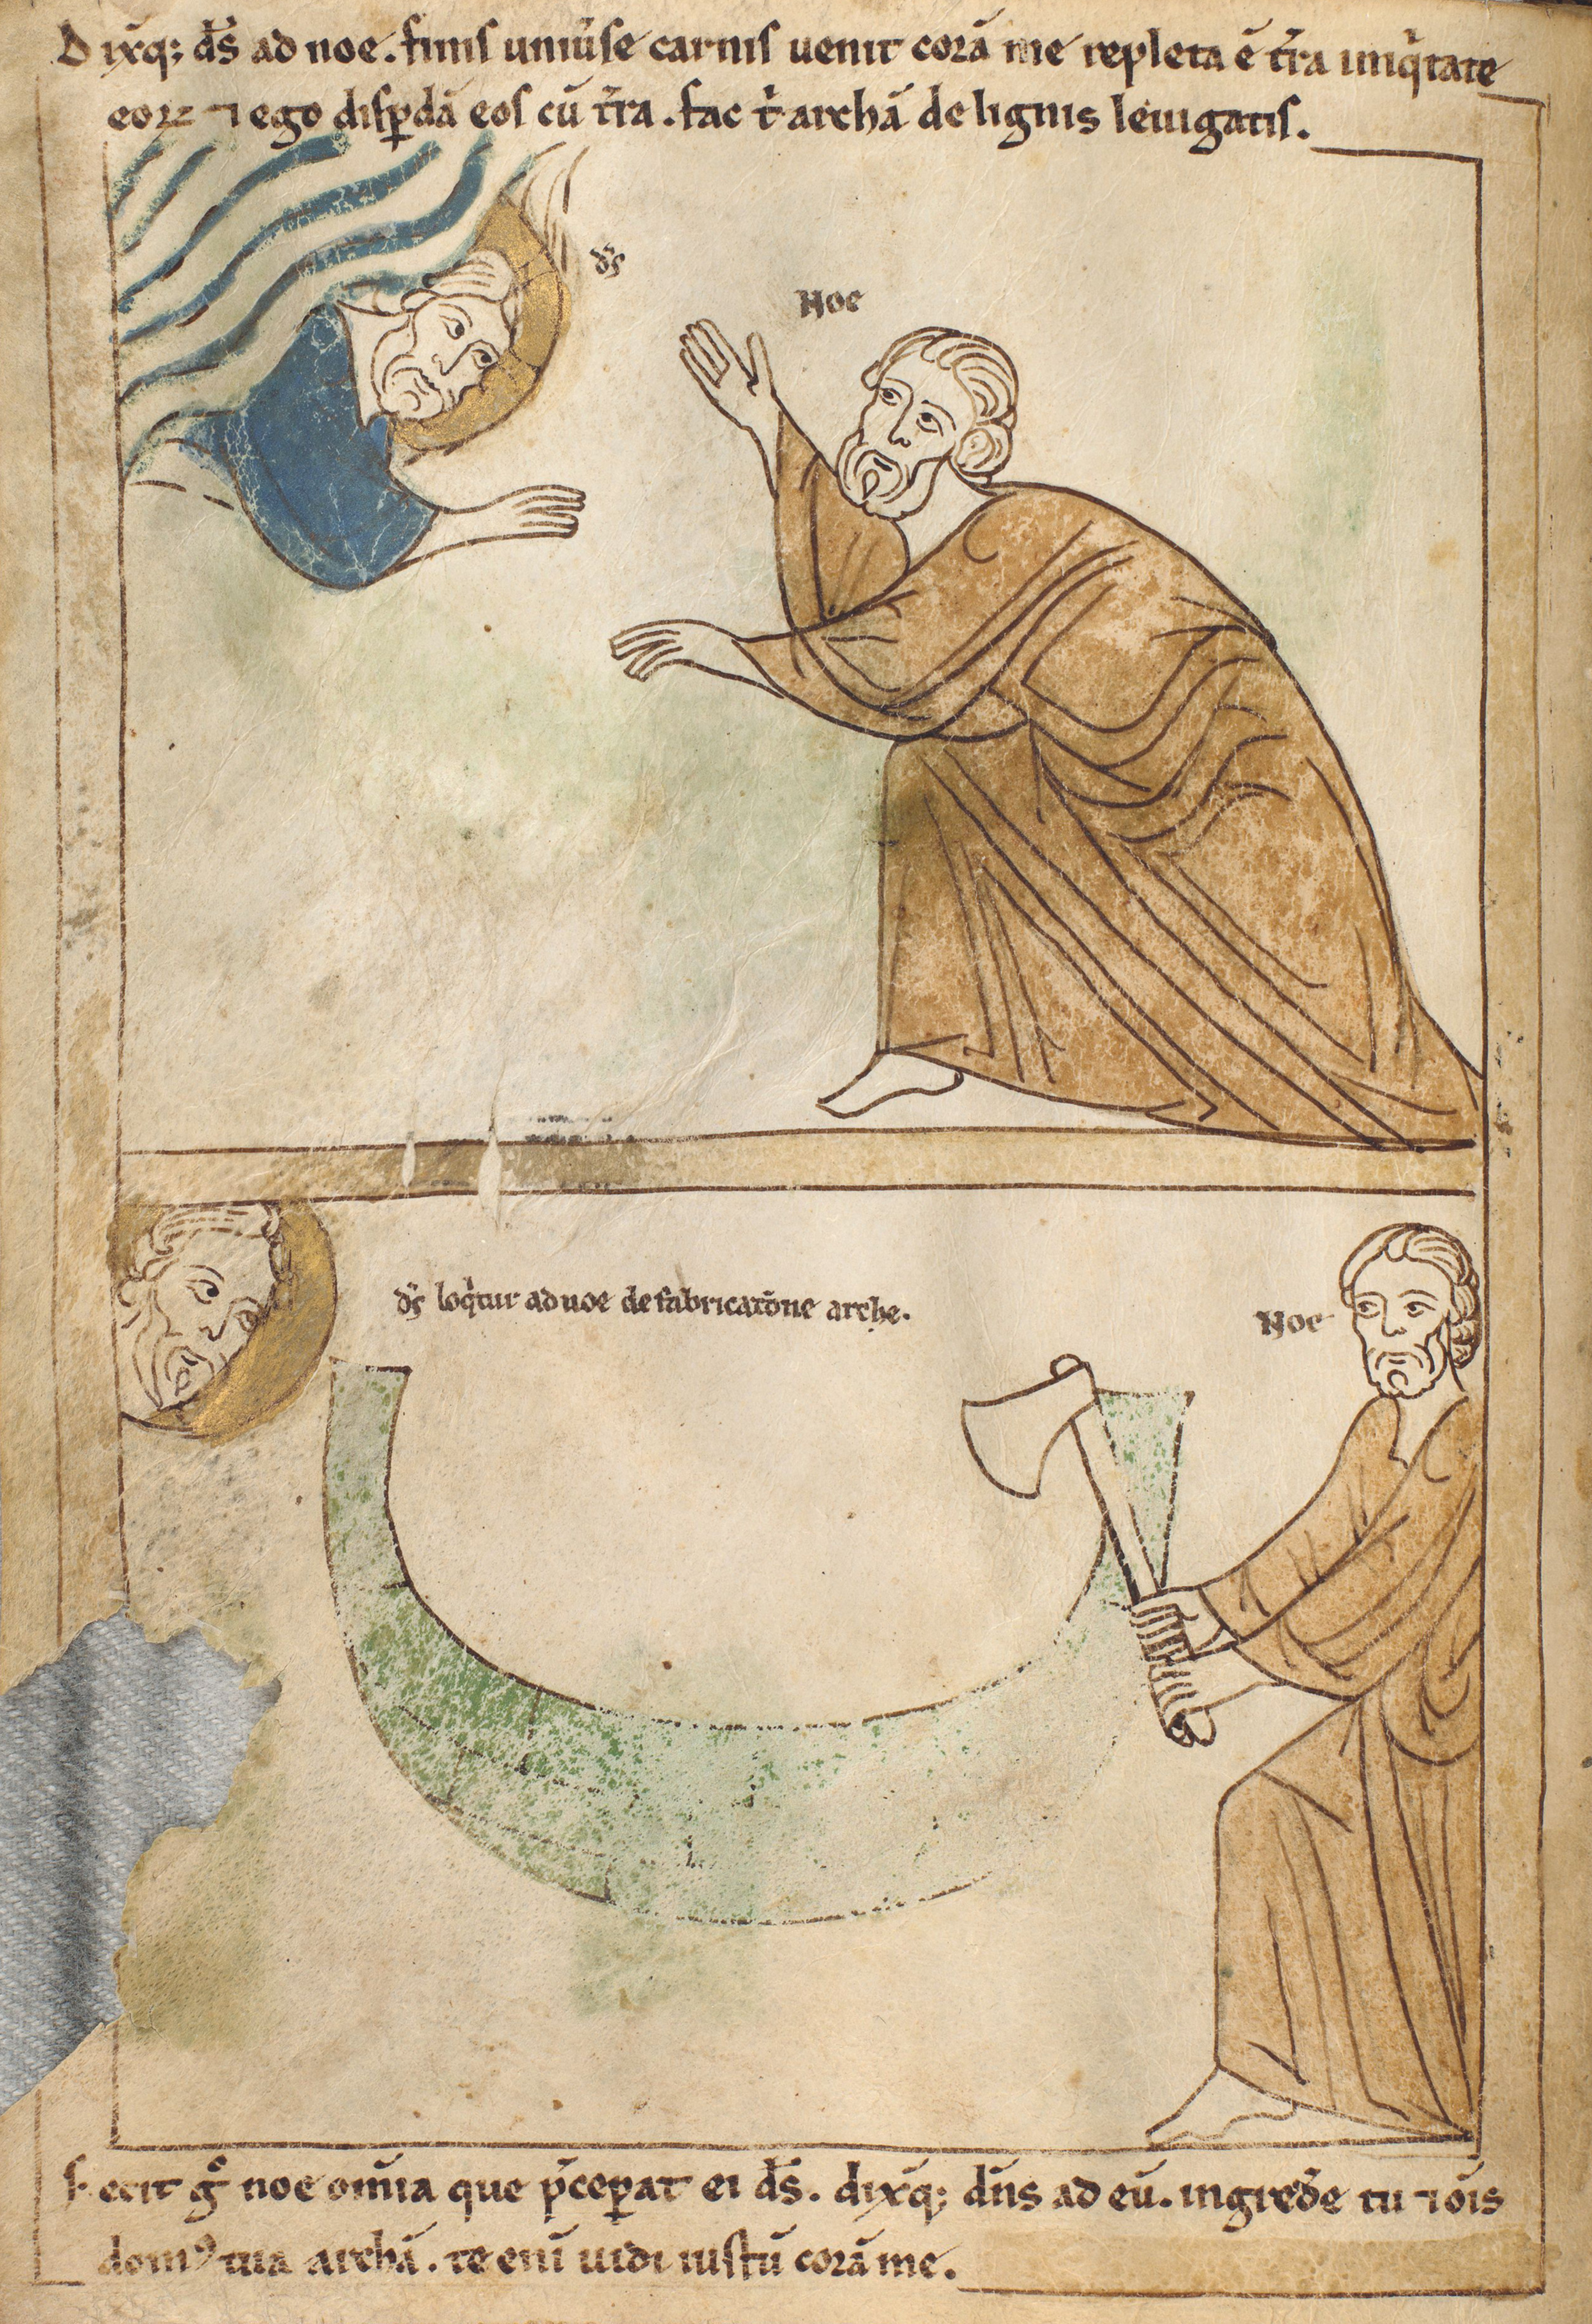 Seconde Bible de Pampelune, folio 8v – Dieu ordonne à Noé de fabriquer une arche (Gn 6, 13-14). Noé fabrique l’arche sur les indications de Dieu (Gn 6, 15-22).